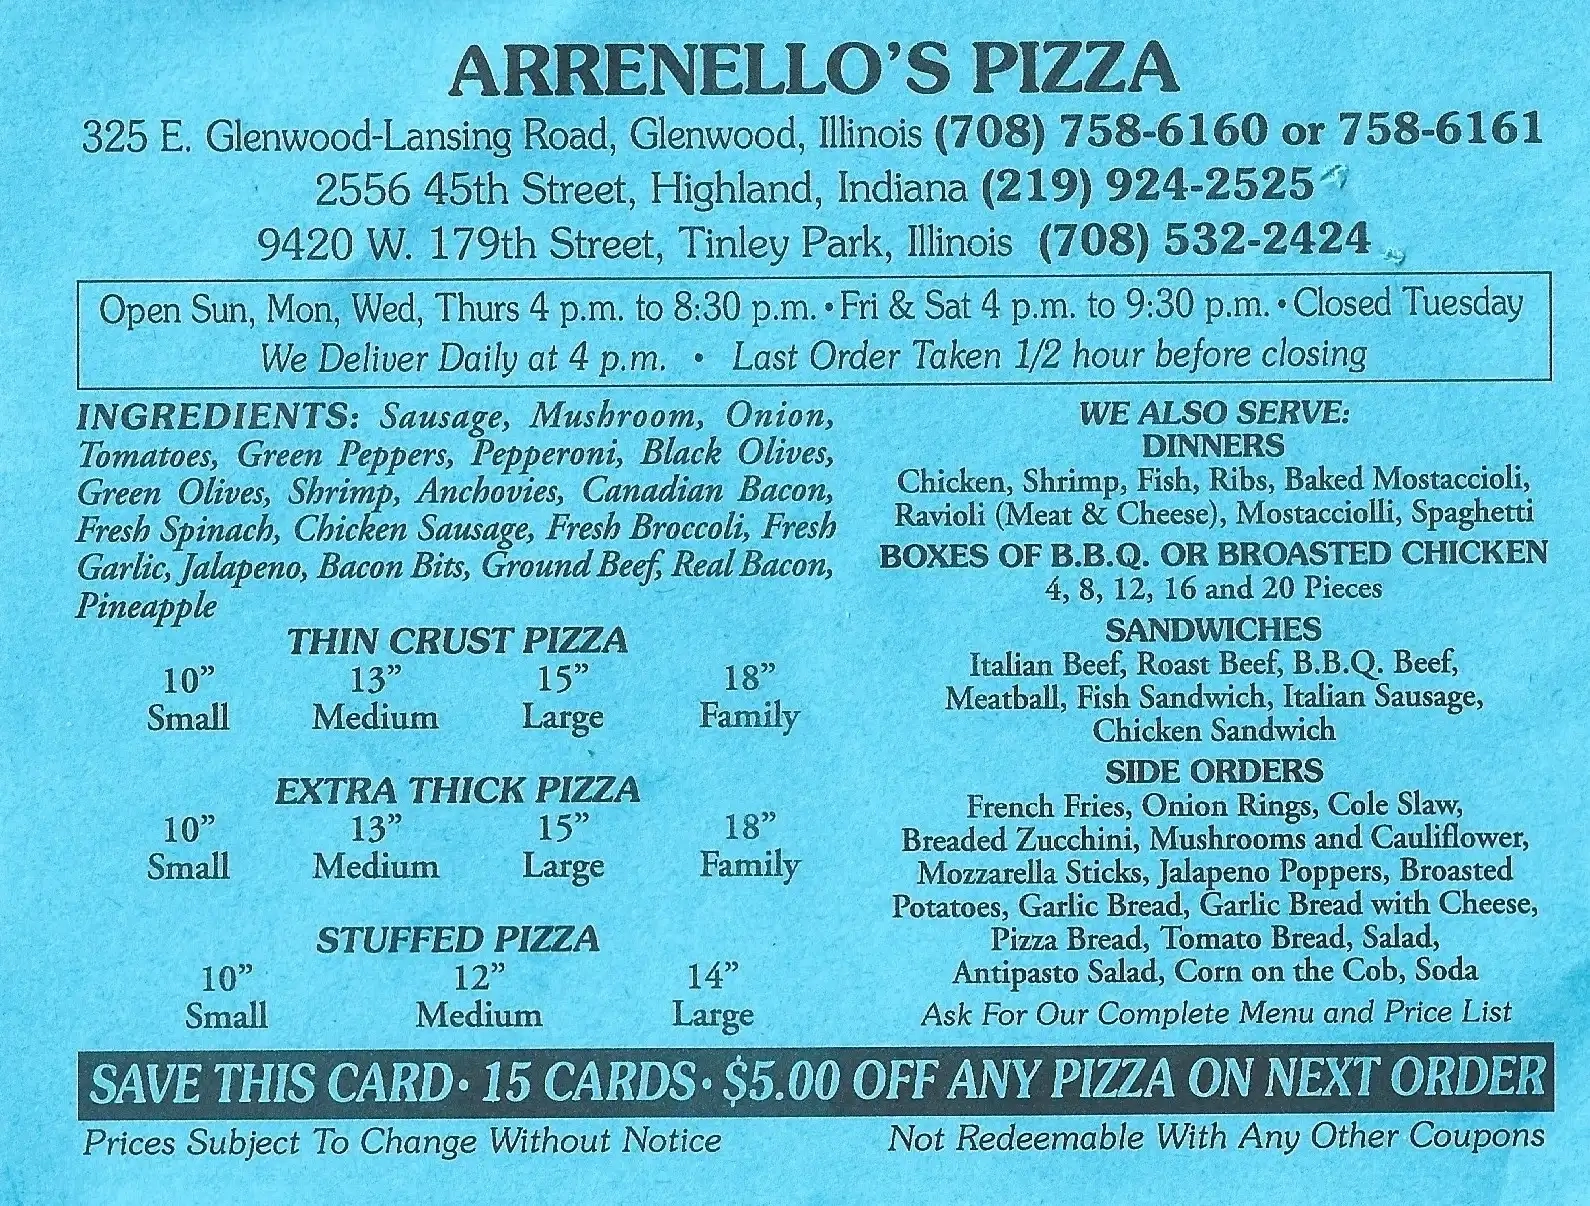 Arrenello's Pizza 15 Cards